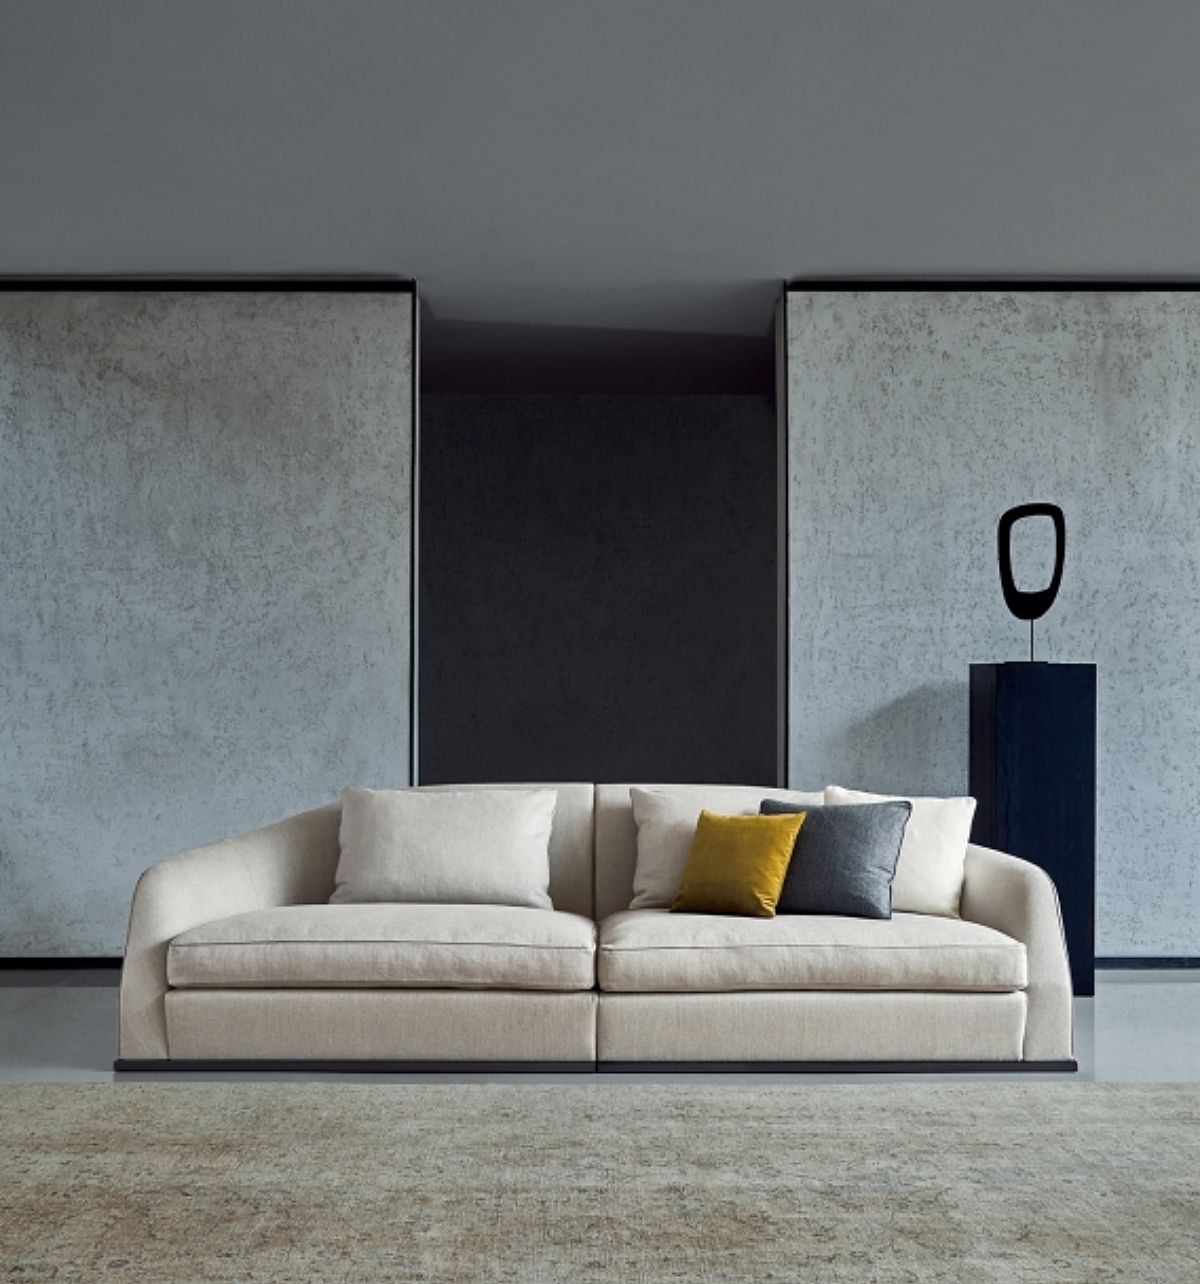 De Alfred sofa van Mood is met zijn "New Classic" flair en donzen vulling uiterst comfortabel.